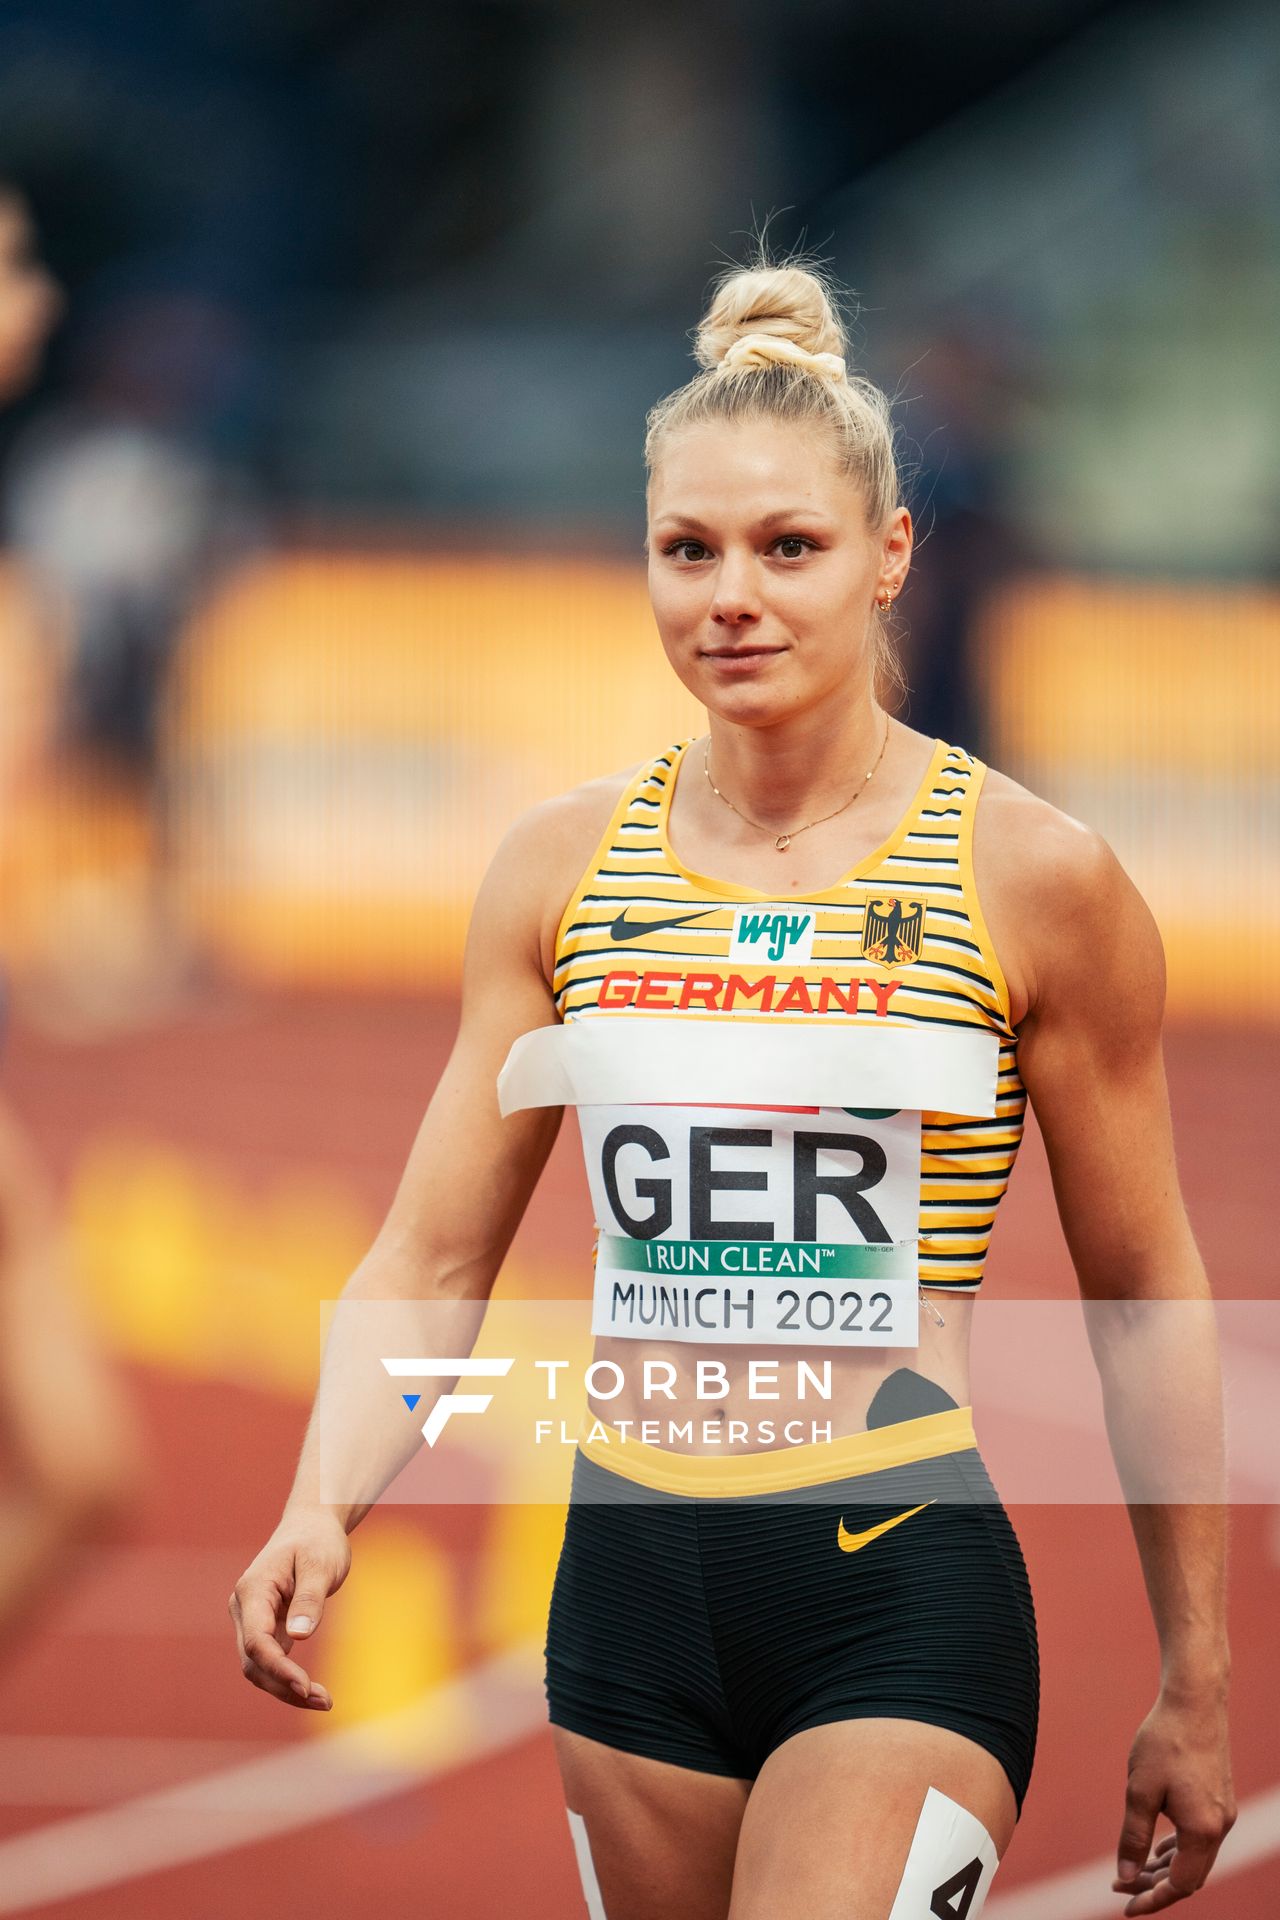 Lisa Mayer (GER) am 19.08.2022 bei den Leichtathletik-Europameisterschaften in Muenchen